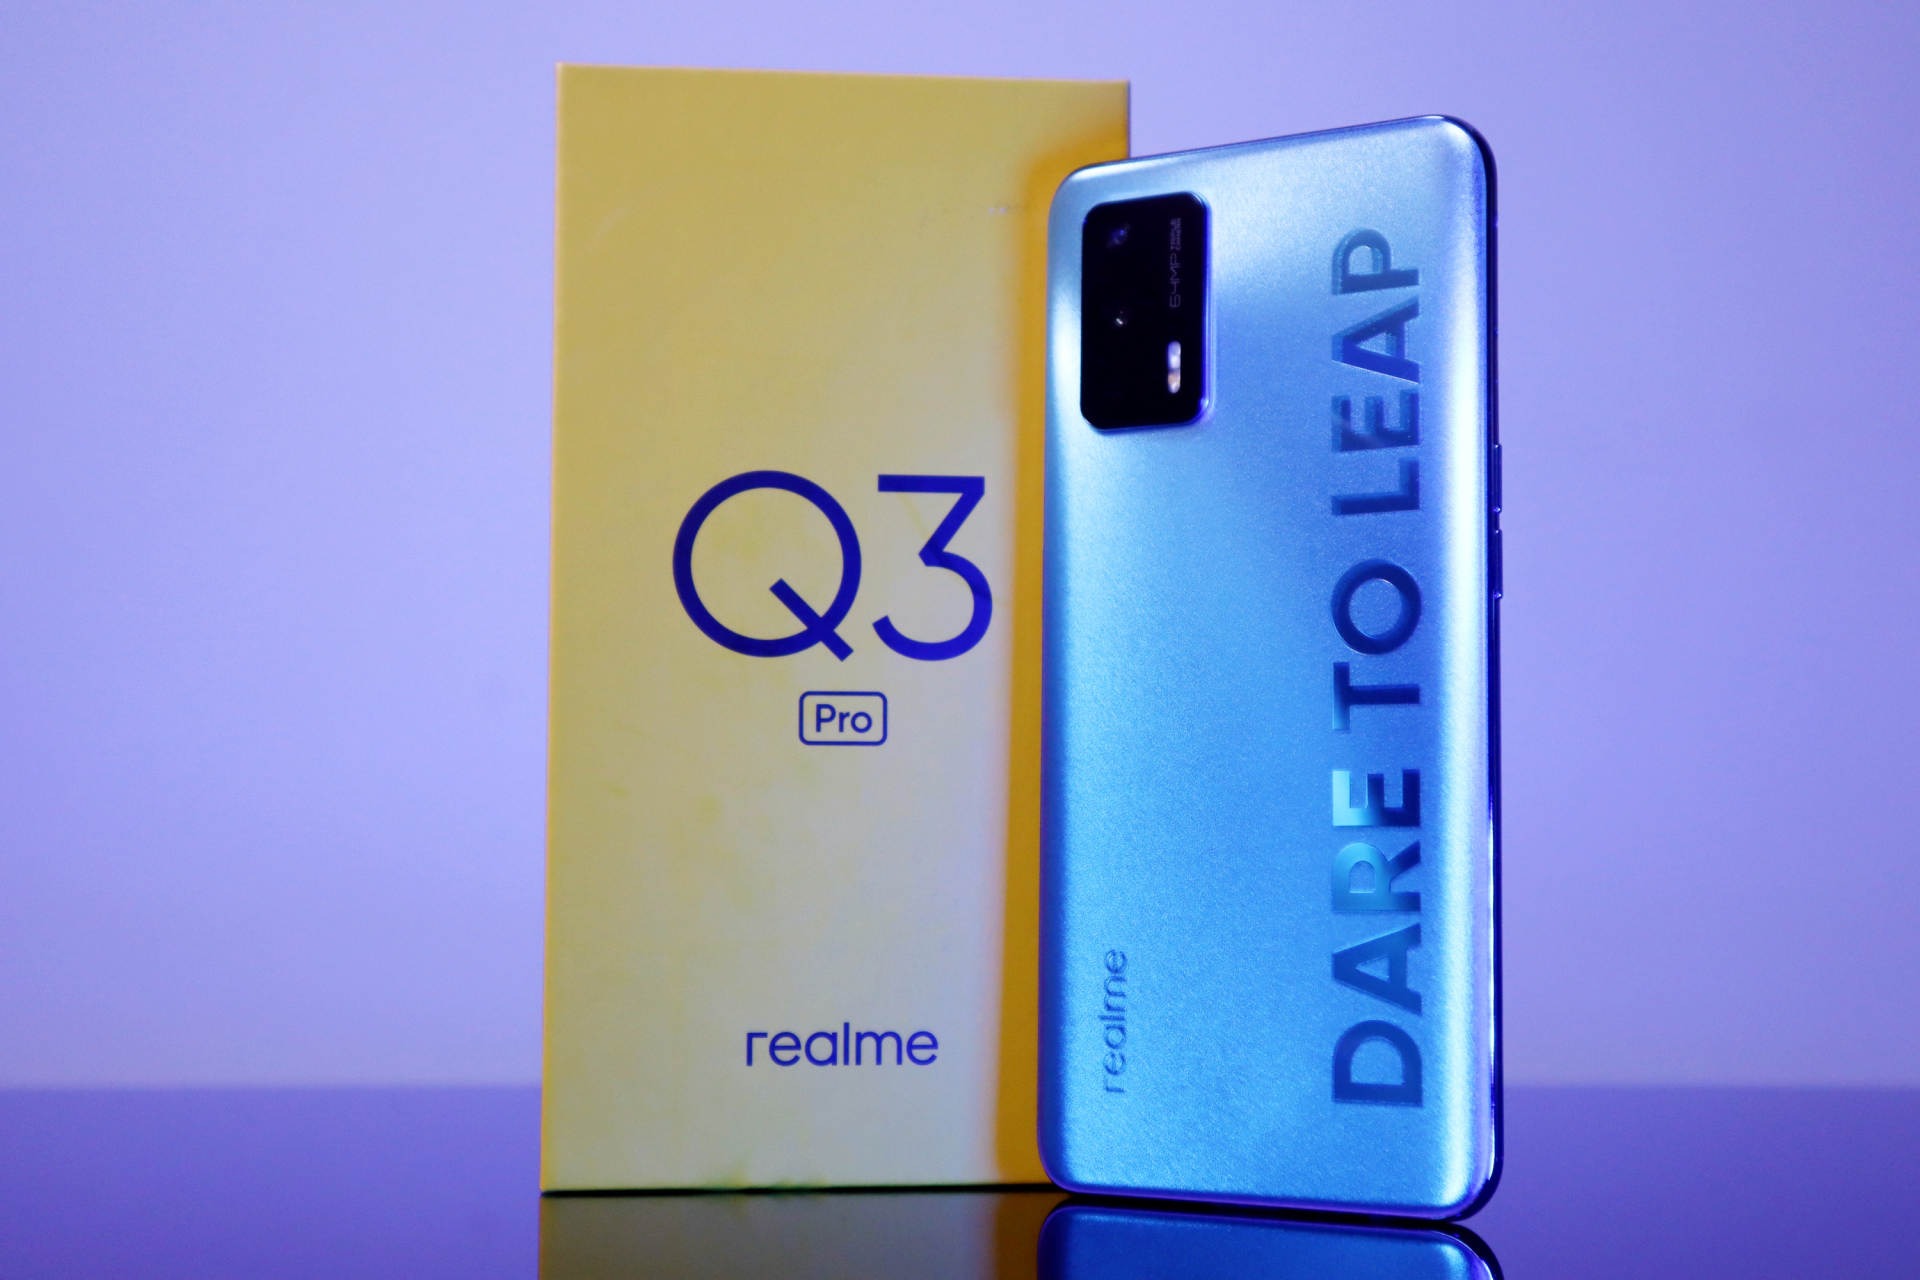 Realme Q3 Pro